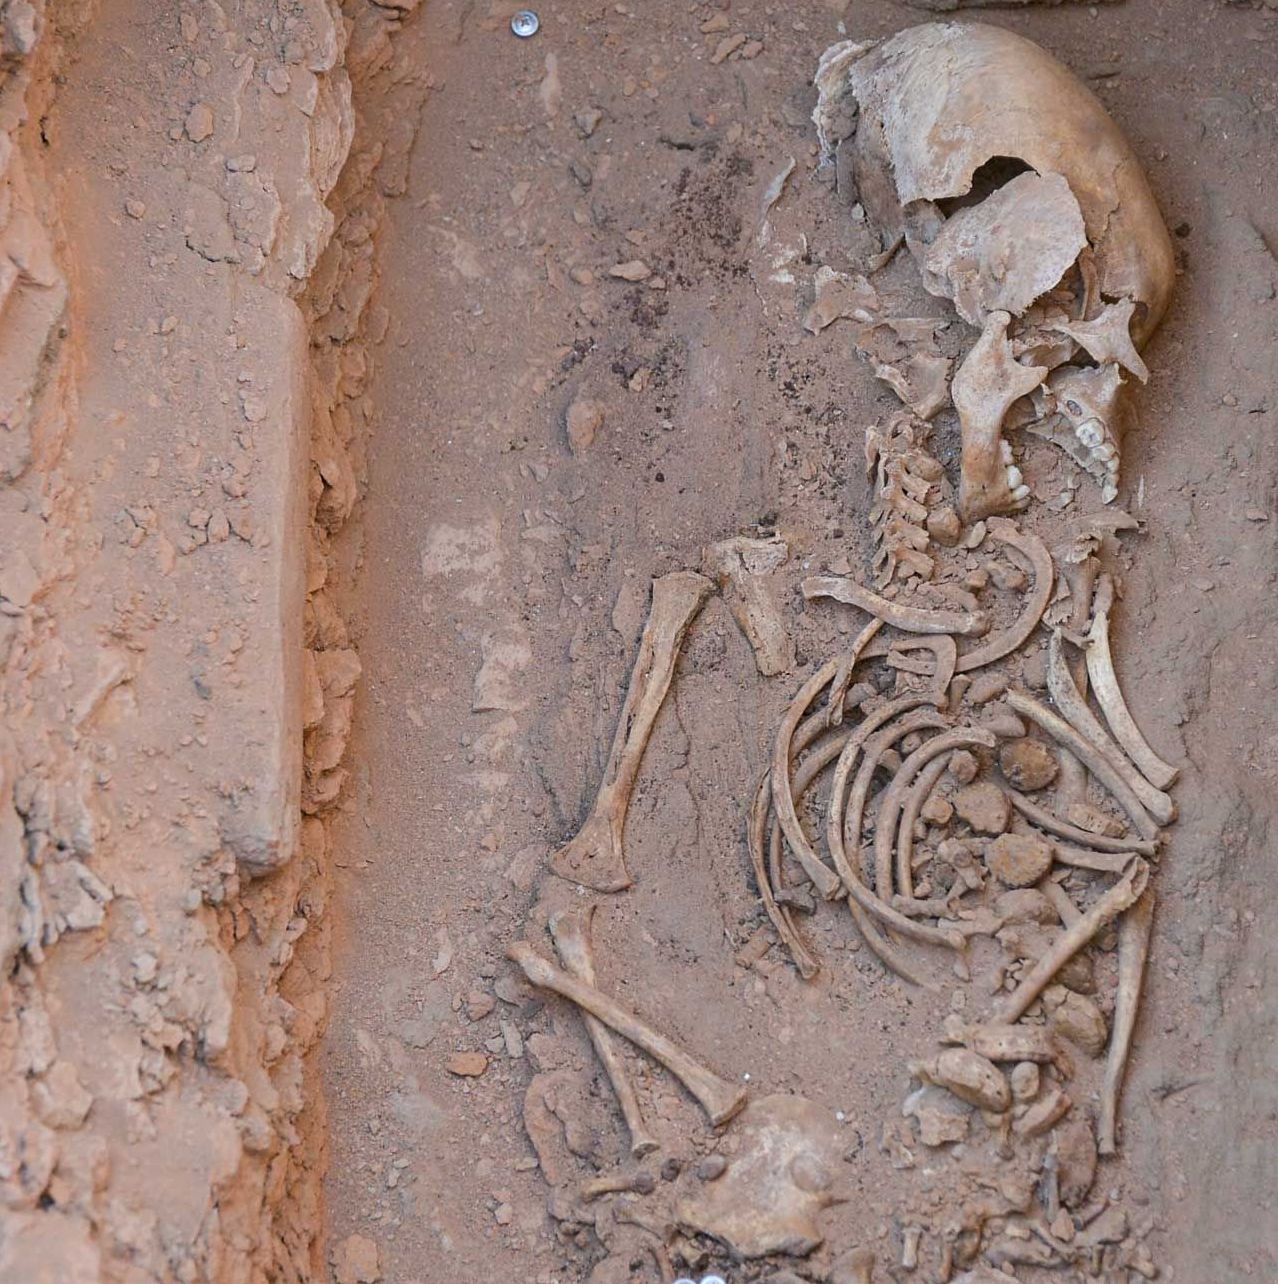 Останки, найденные в археологическом памятнике Кызылоба